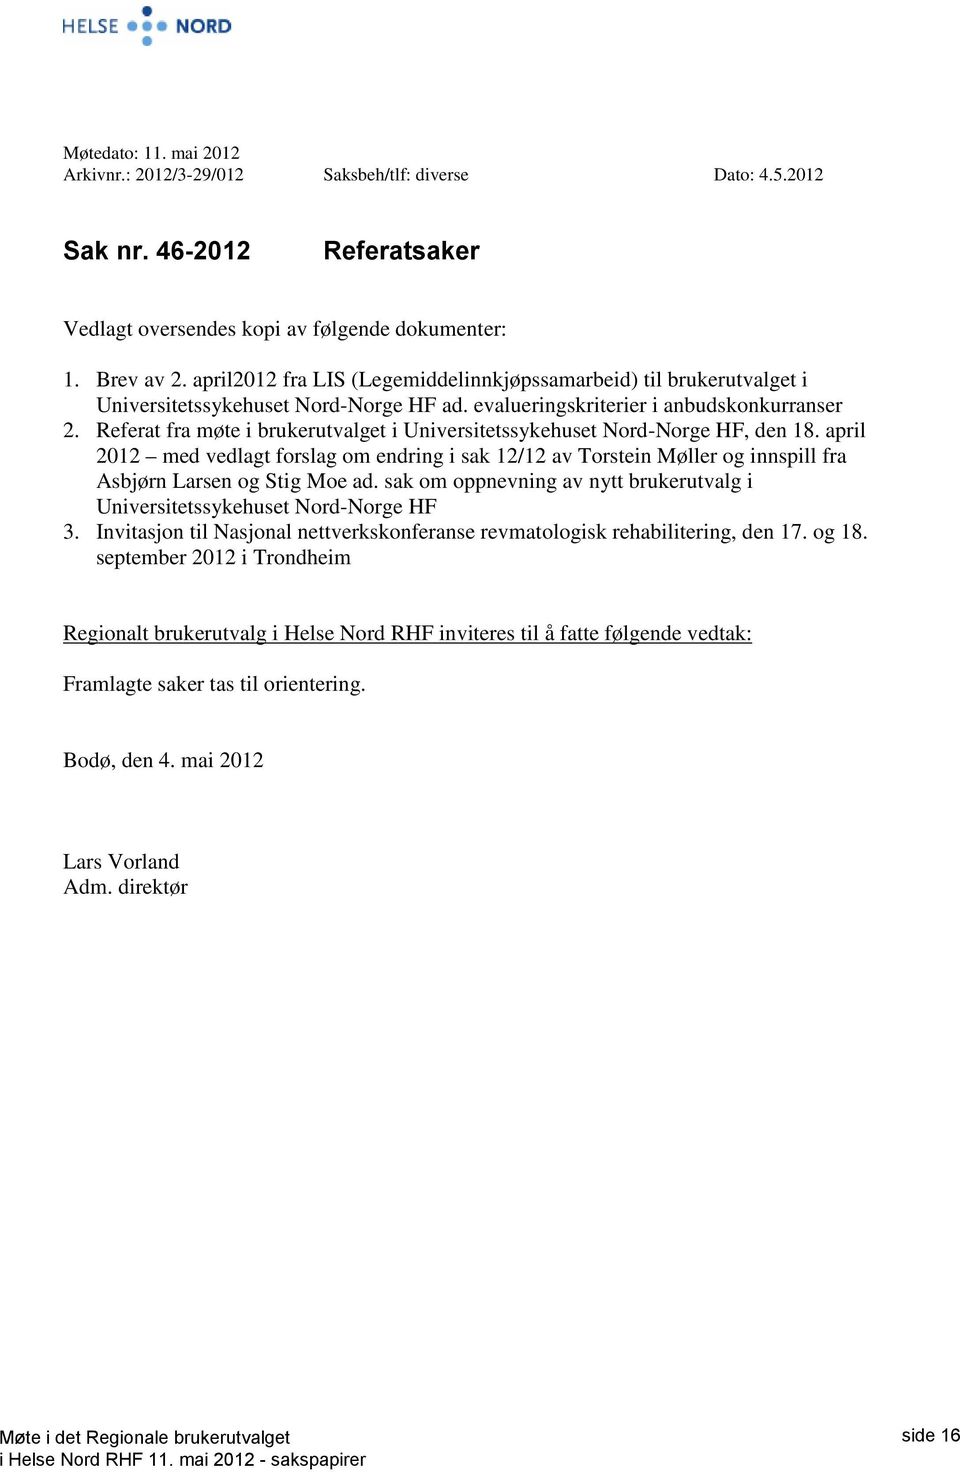 Referat fra møte i brukerutvalget i Universitetssykehuset Nord-Norge HF, den 18. april 2012 med vedlagt forslag om endring i sak 12/12 av Torstein Møller og innspill fra Asbjørn Larsen og Stig Moe ad.